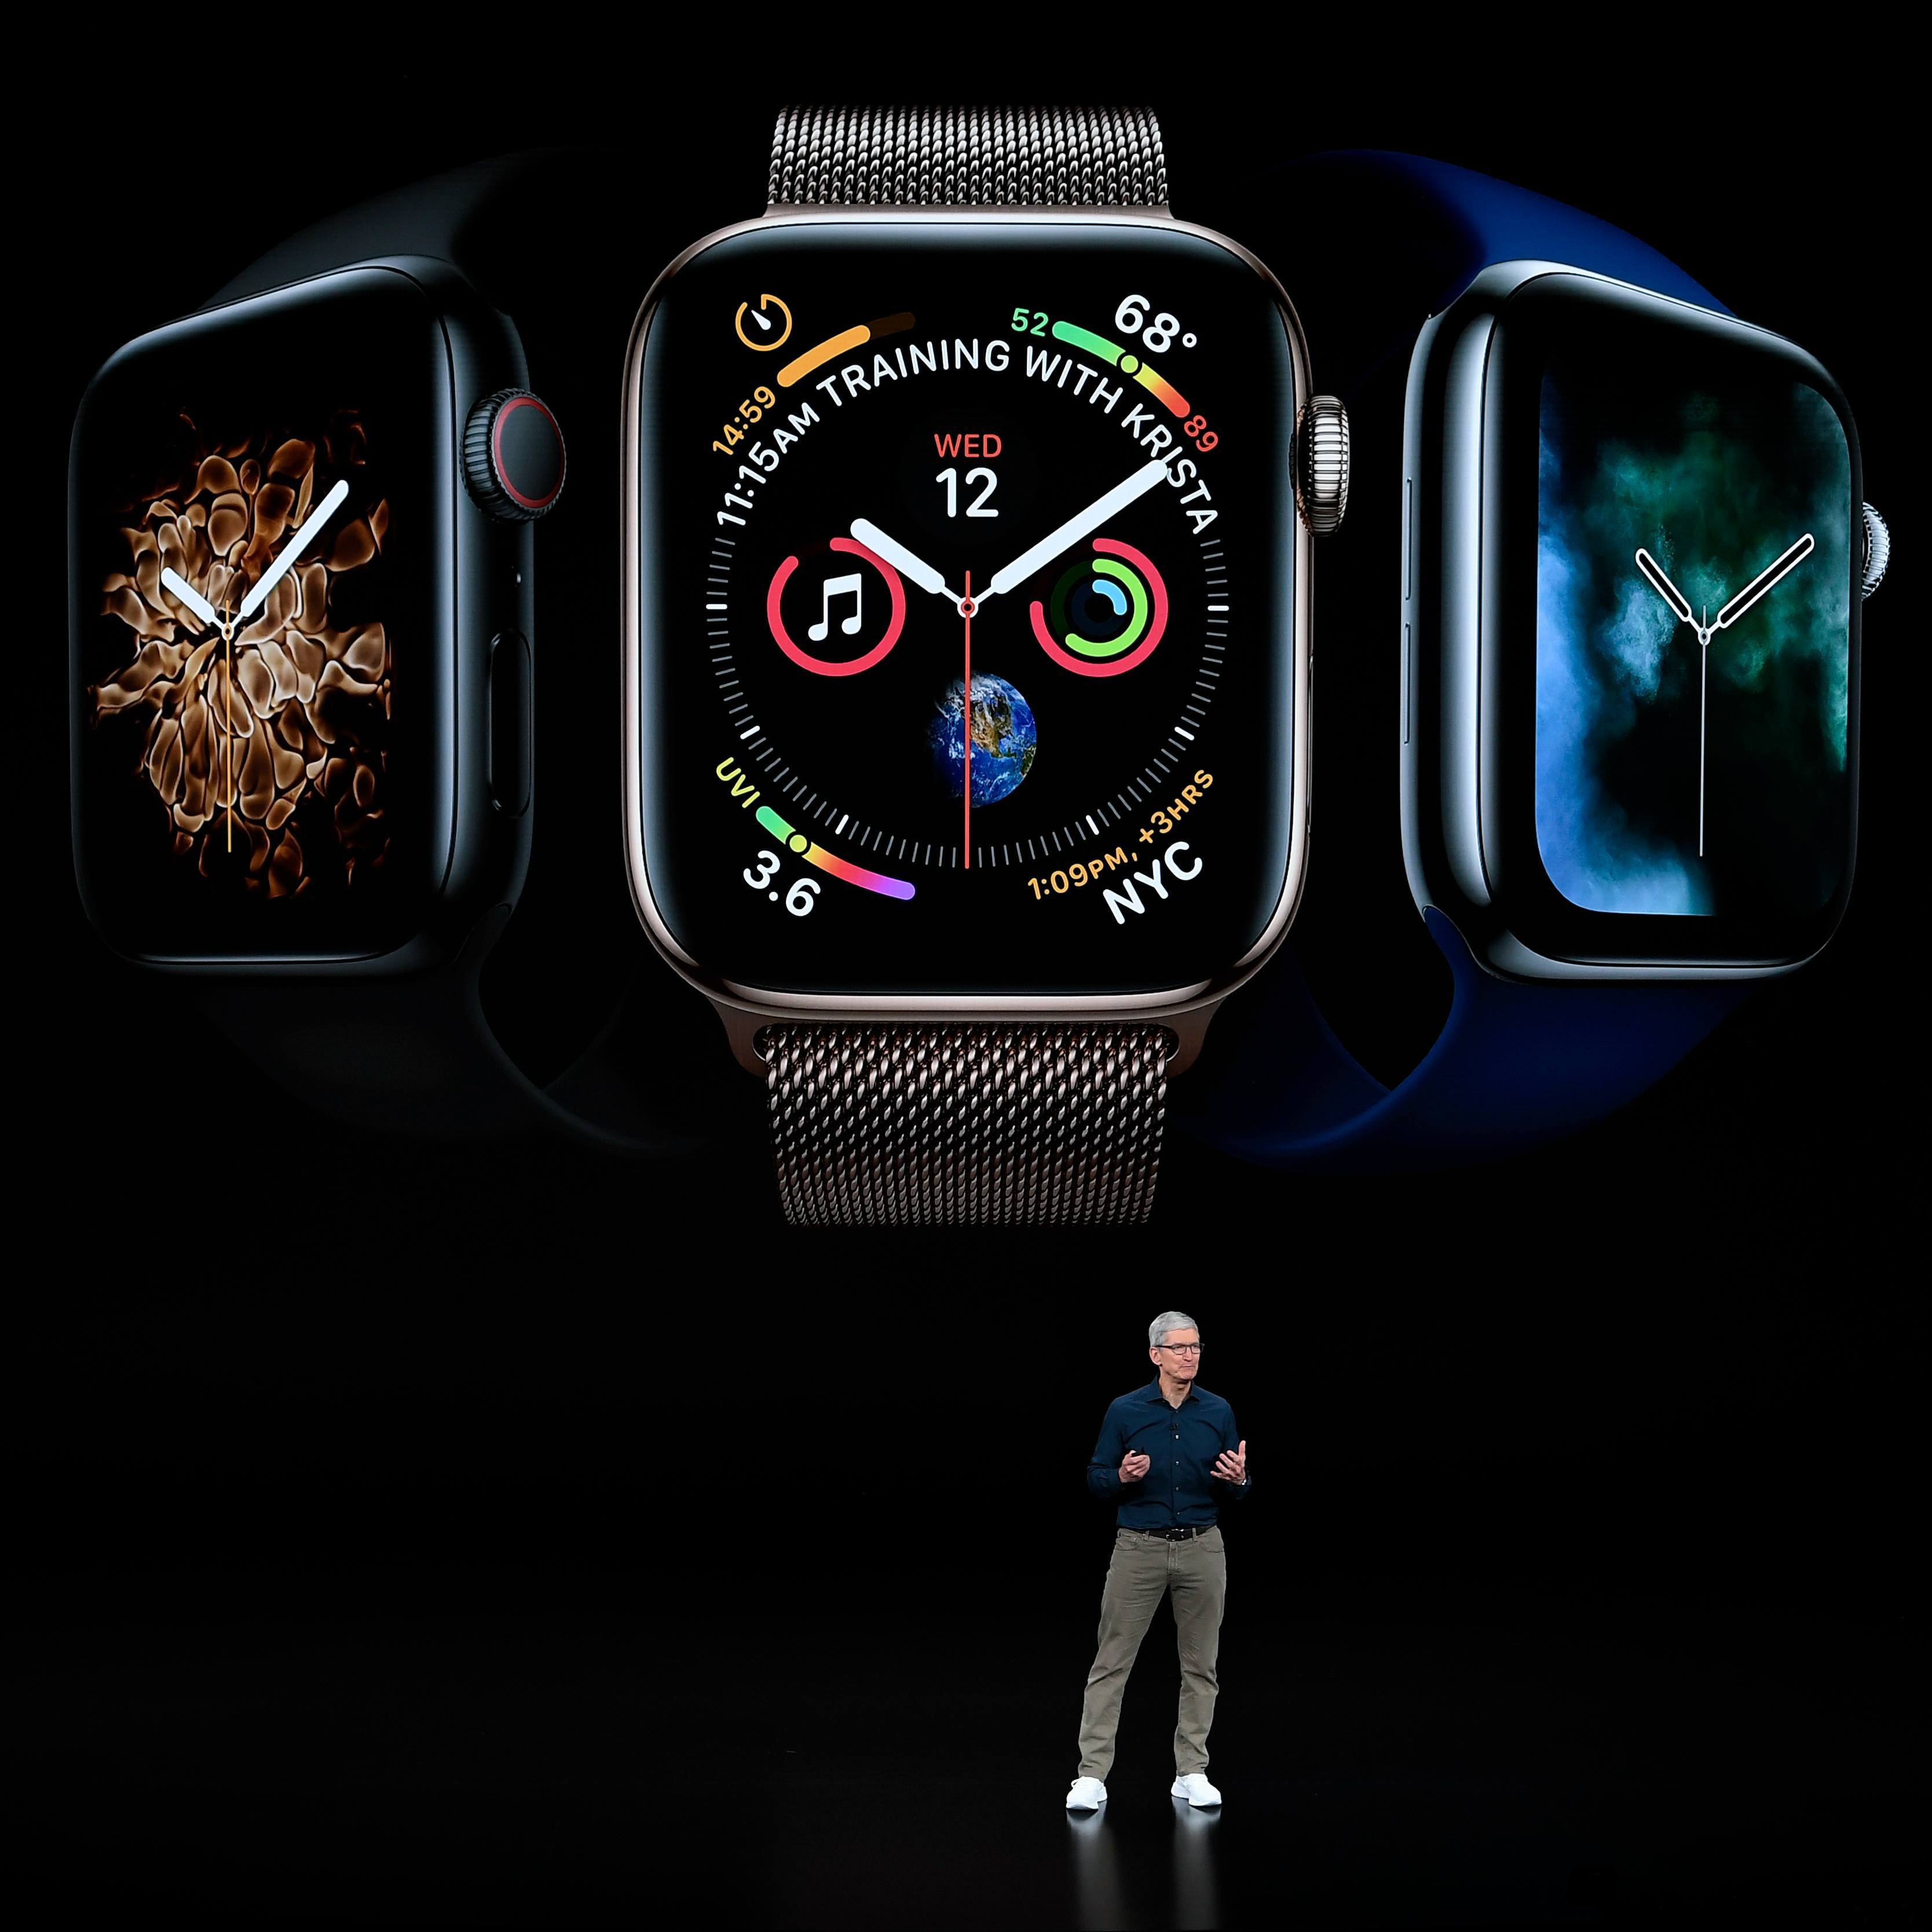  Apple  ومن المتوقع أن يعلن الجديد Apple Watch سلسلة 5 في حدث في سبتمبر من هذا العام